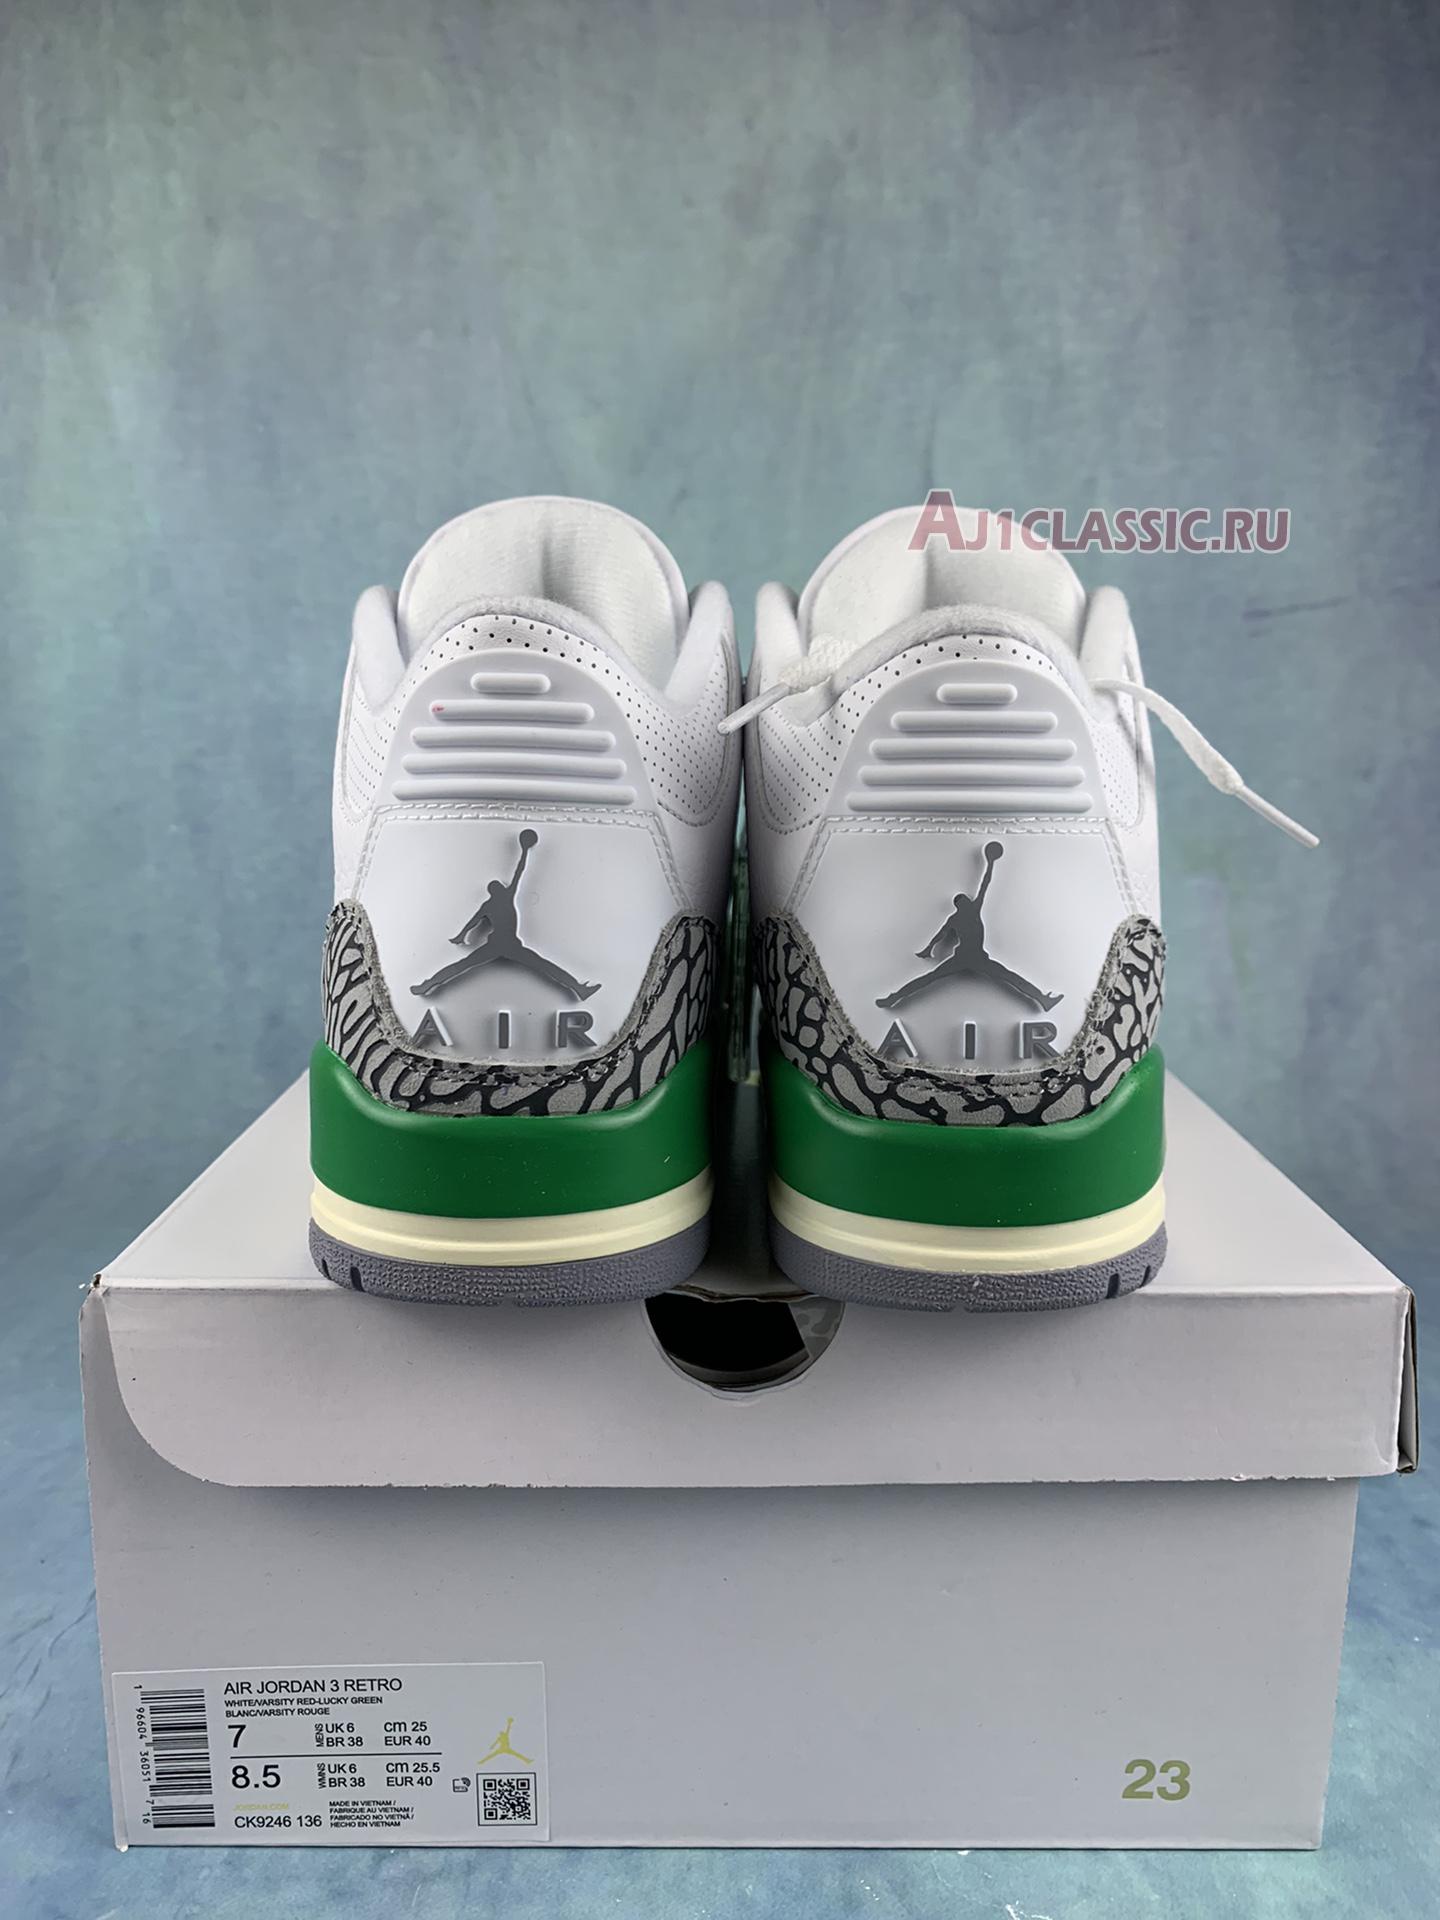 Air Jordan 3 Retro "Lucky Green" CK9246-136